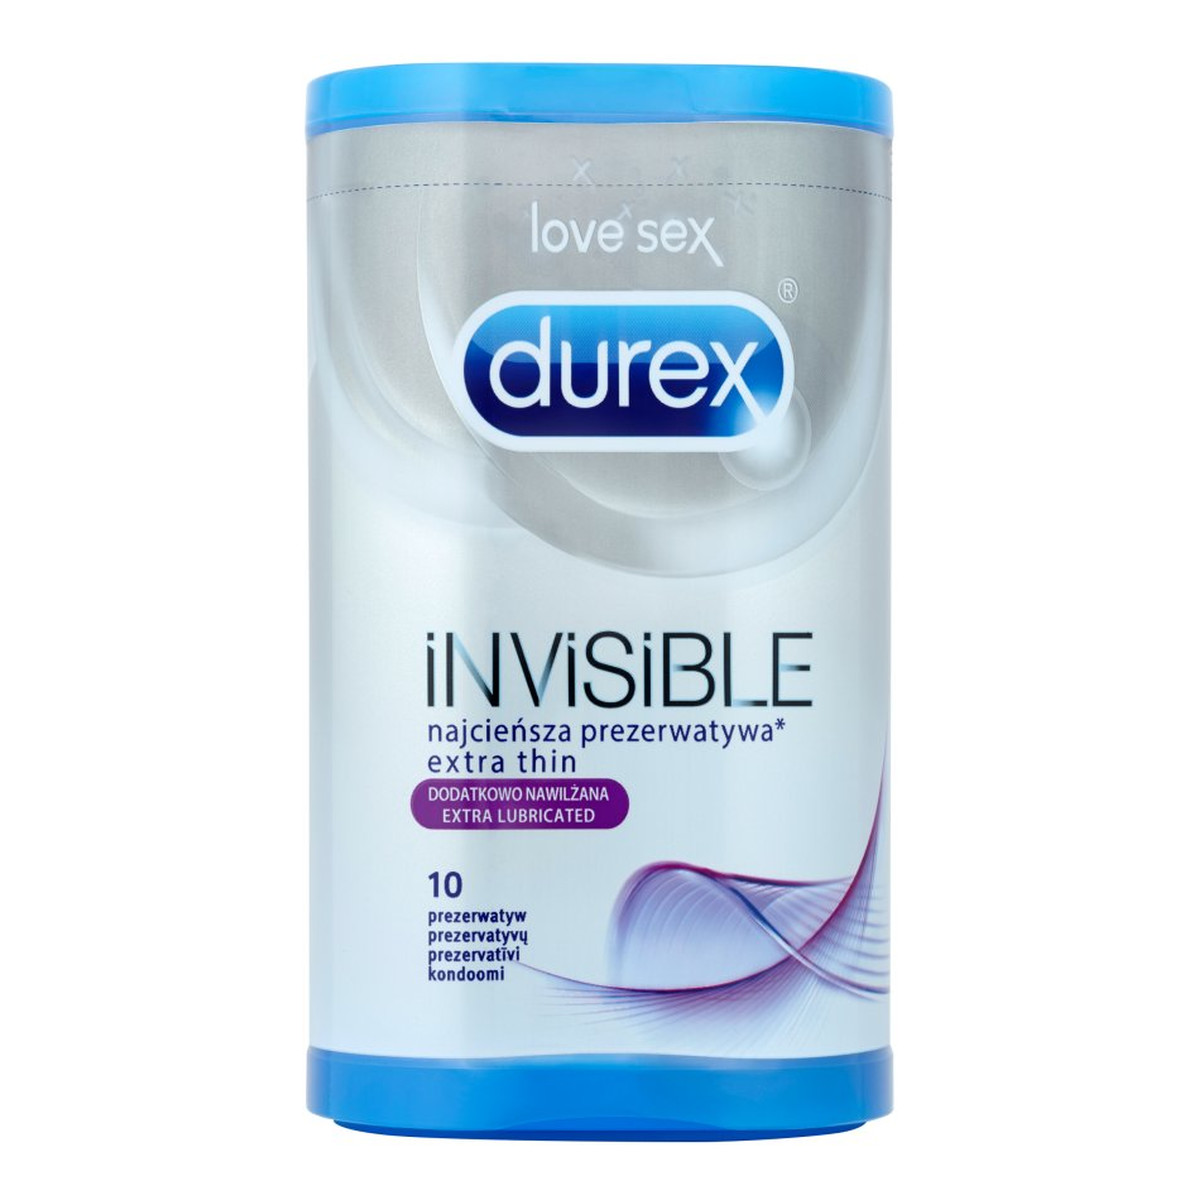 Durex Invisible Prezerwatywy dodatkowo nawilżane (pudełko) 10 szt.